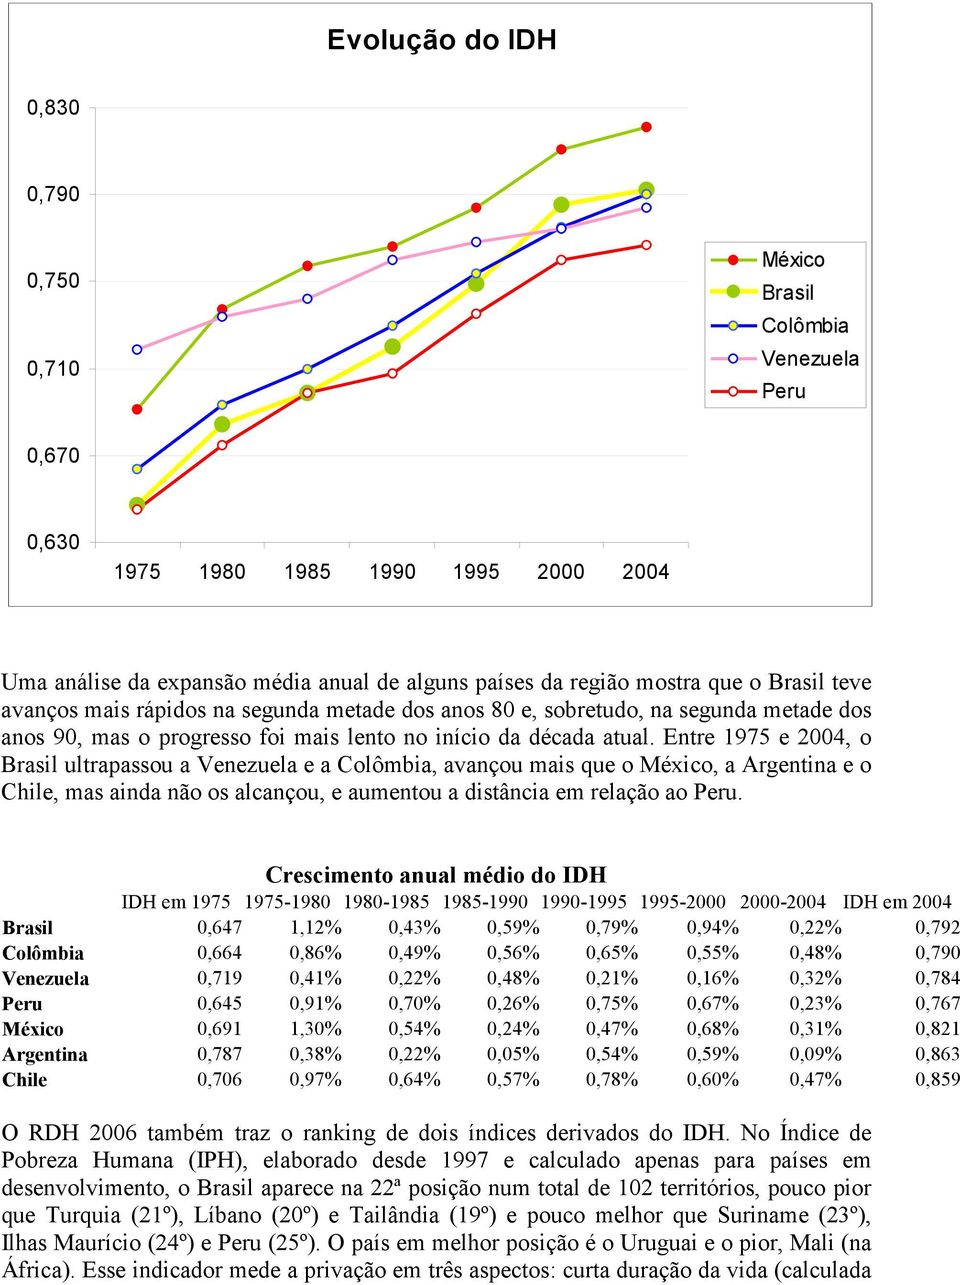 Entre 1975 e 2004, o Brasil ultrapassou a Venezuela e a Colômbia, avançou mais que o México, a Argentina e o Chile, mas ainda não os alcançou, e aumentou a distância em relação ao Peru.